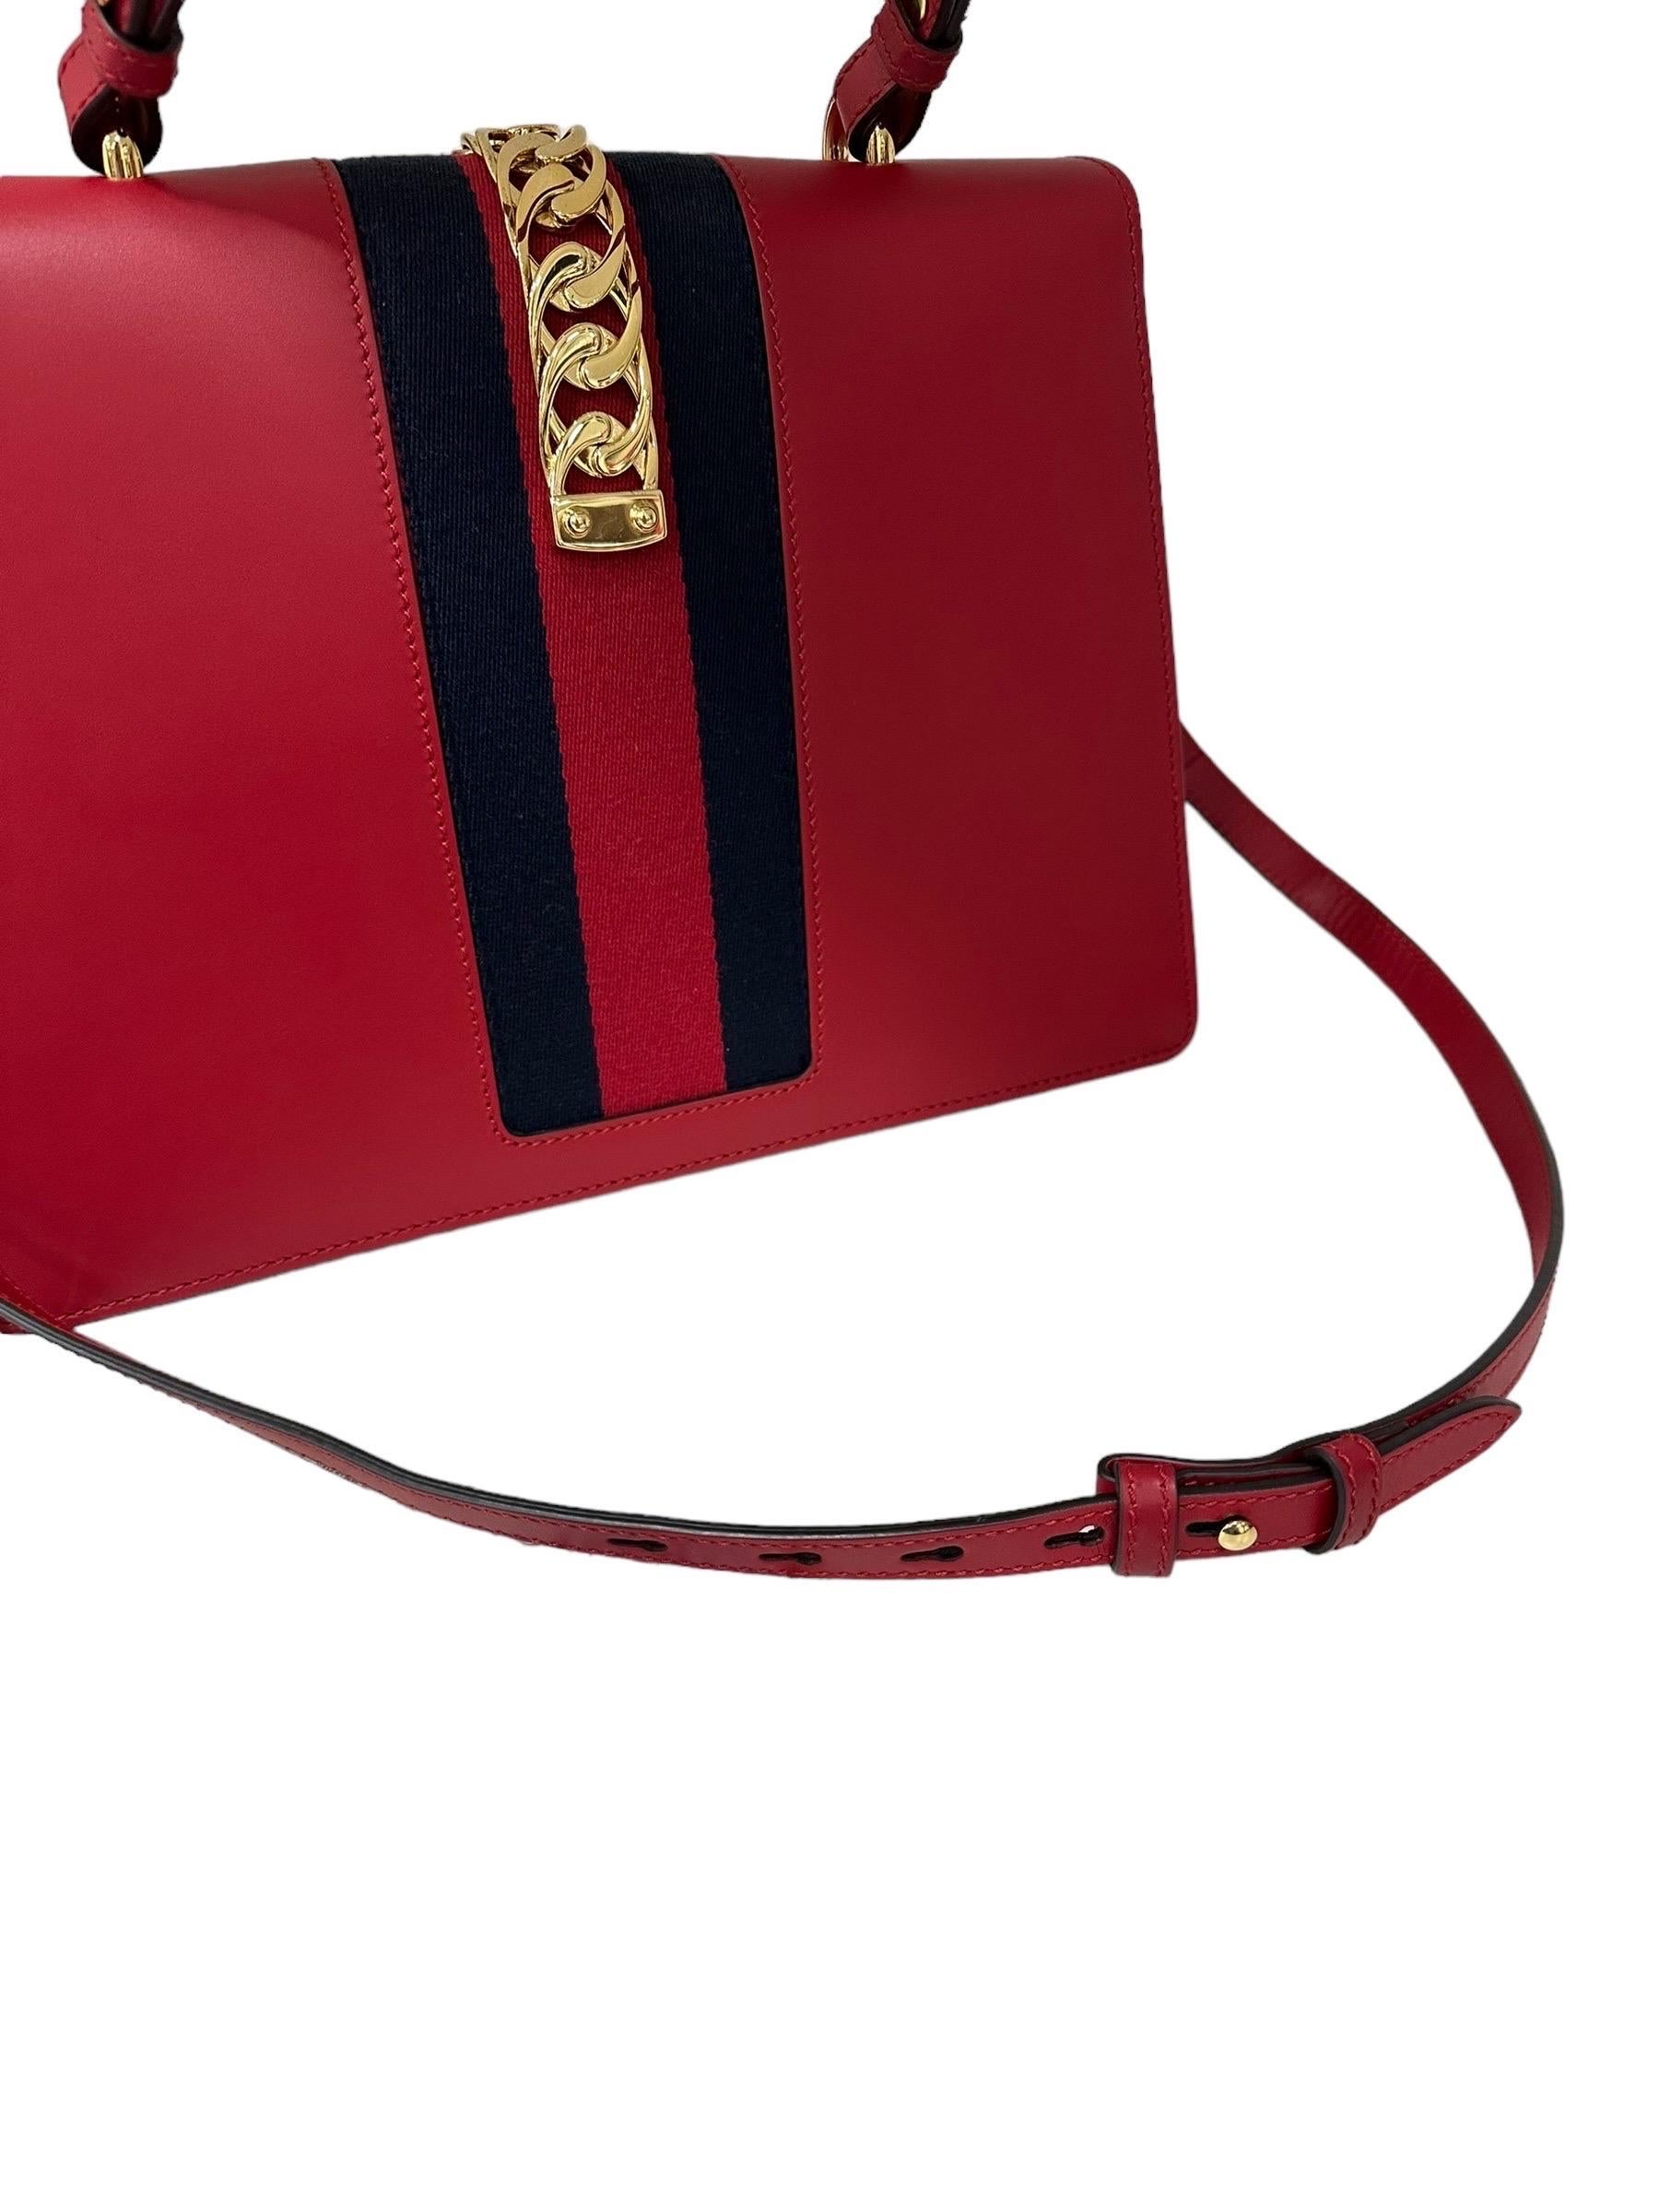 Gucci Sylvie Media Borsa a Tracolla pelle Rossa  For Sale 13